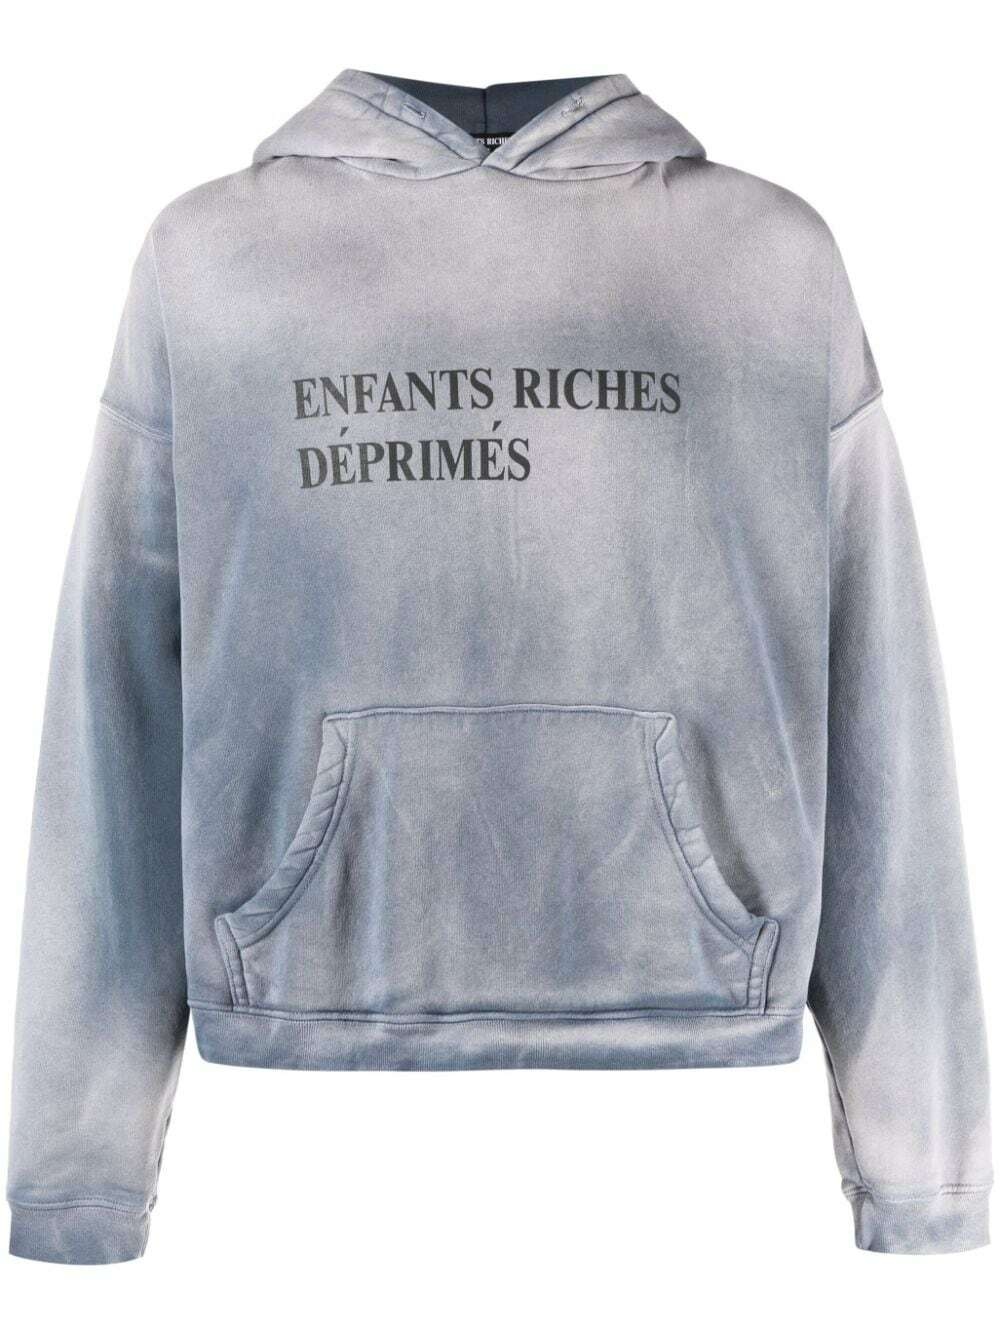 ENFANTS RICHES DÉPRIMÉS - Sweatshirt With Print Enfants Riches Deprimes